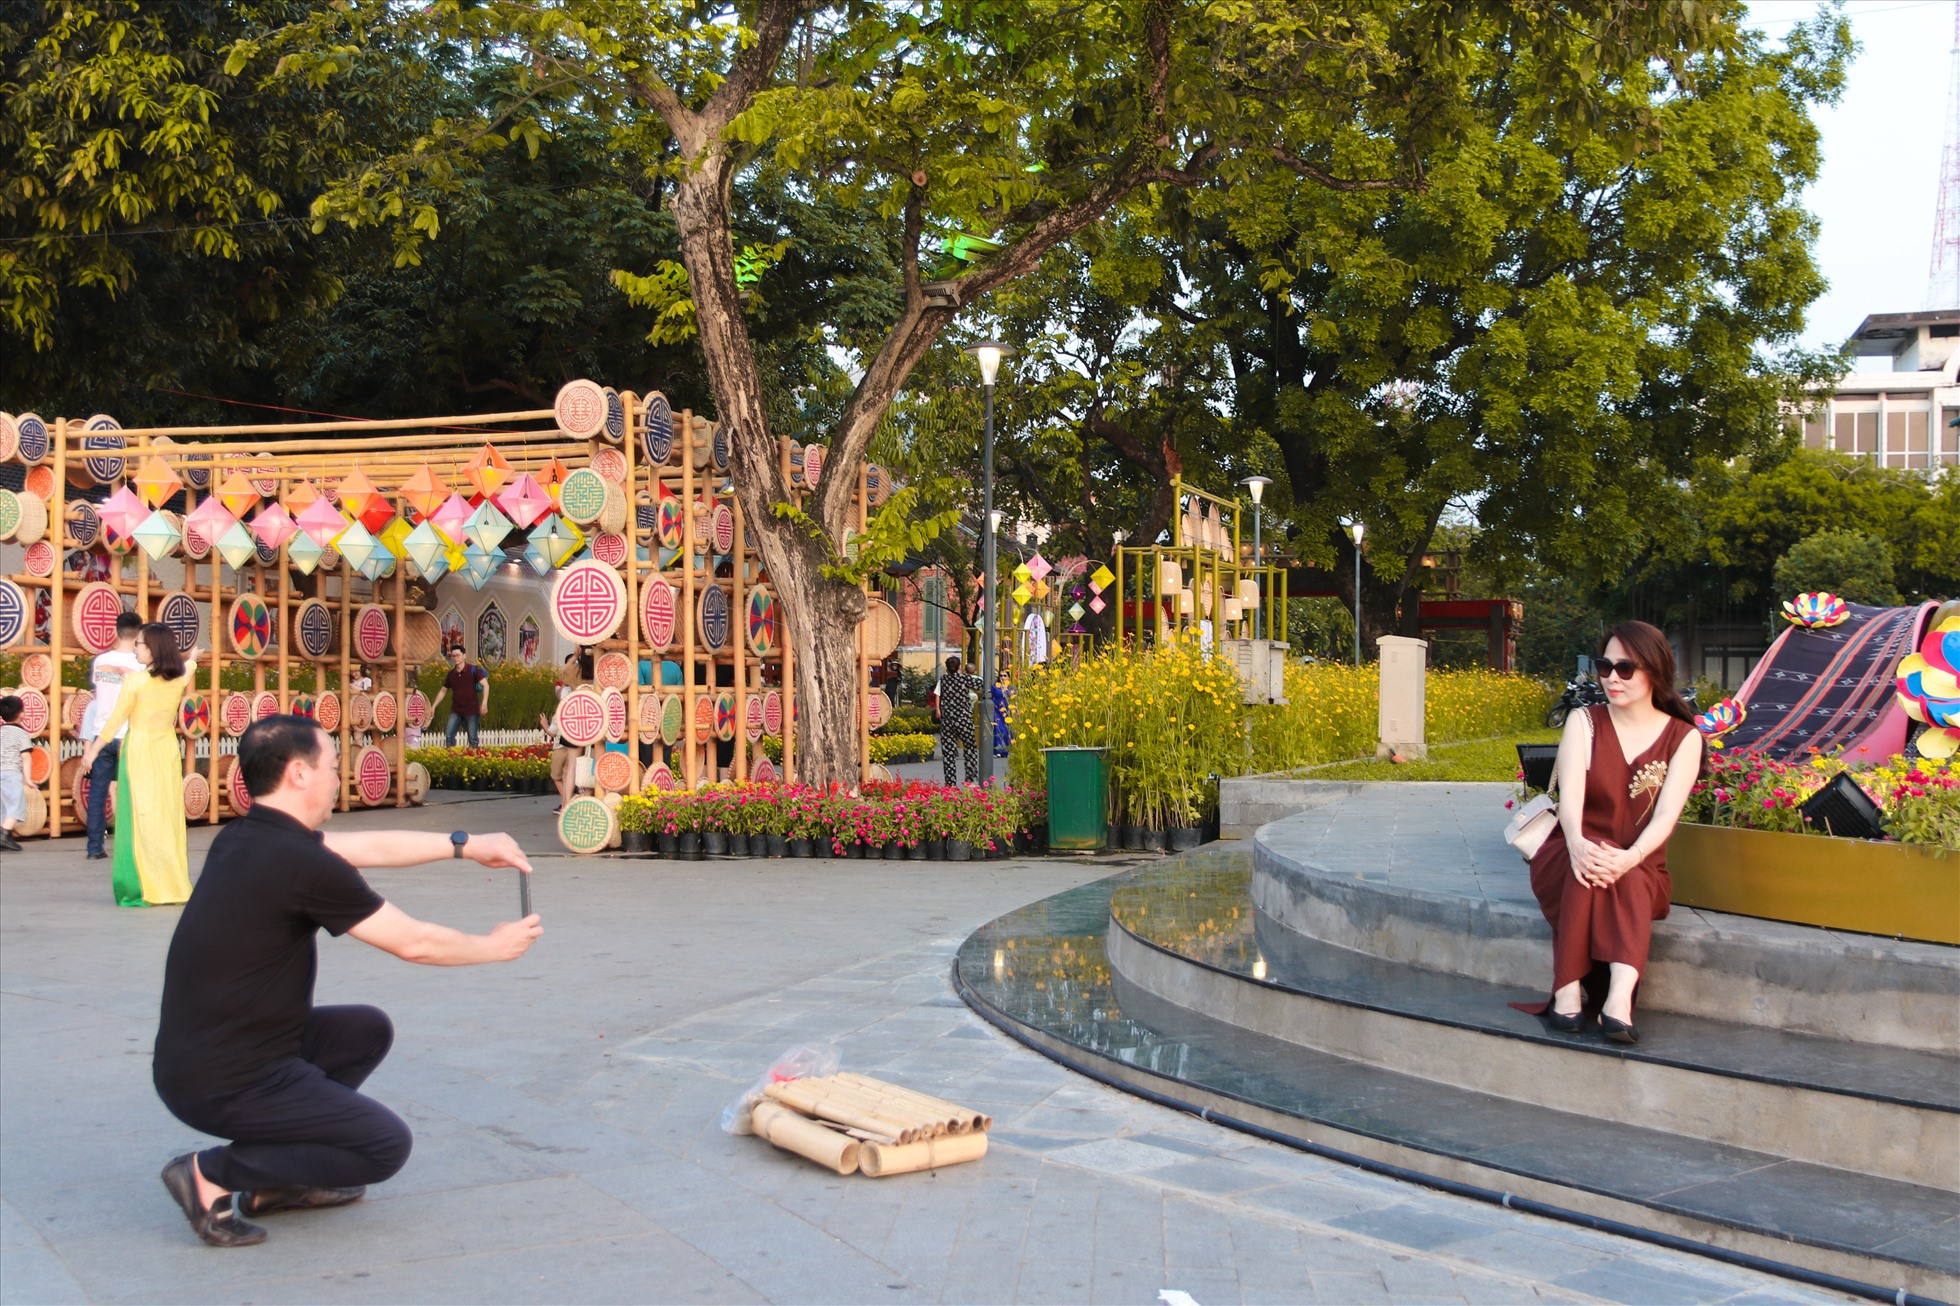 Lãnh đạo tỉnh Thừa Thiên Huế cùng gia đình chụp hình lưu niệm tại không gian hoa của Festival Nghề truyền thống Huế sau giờ làm việc.